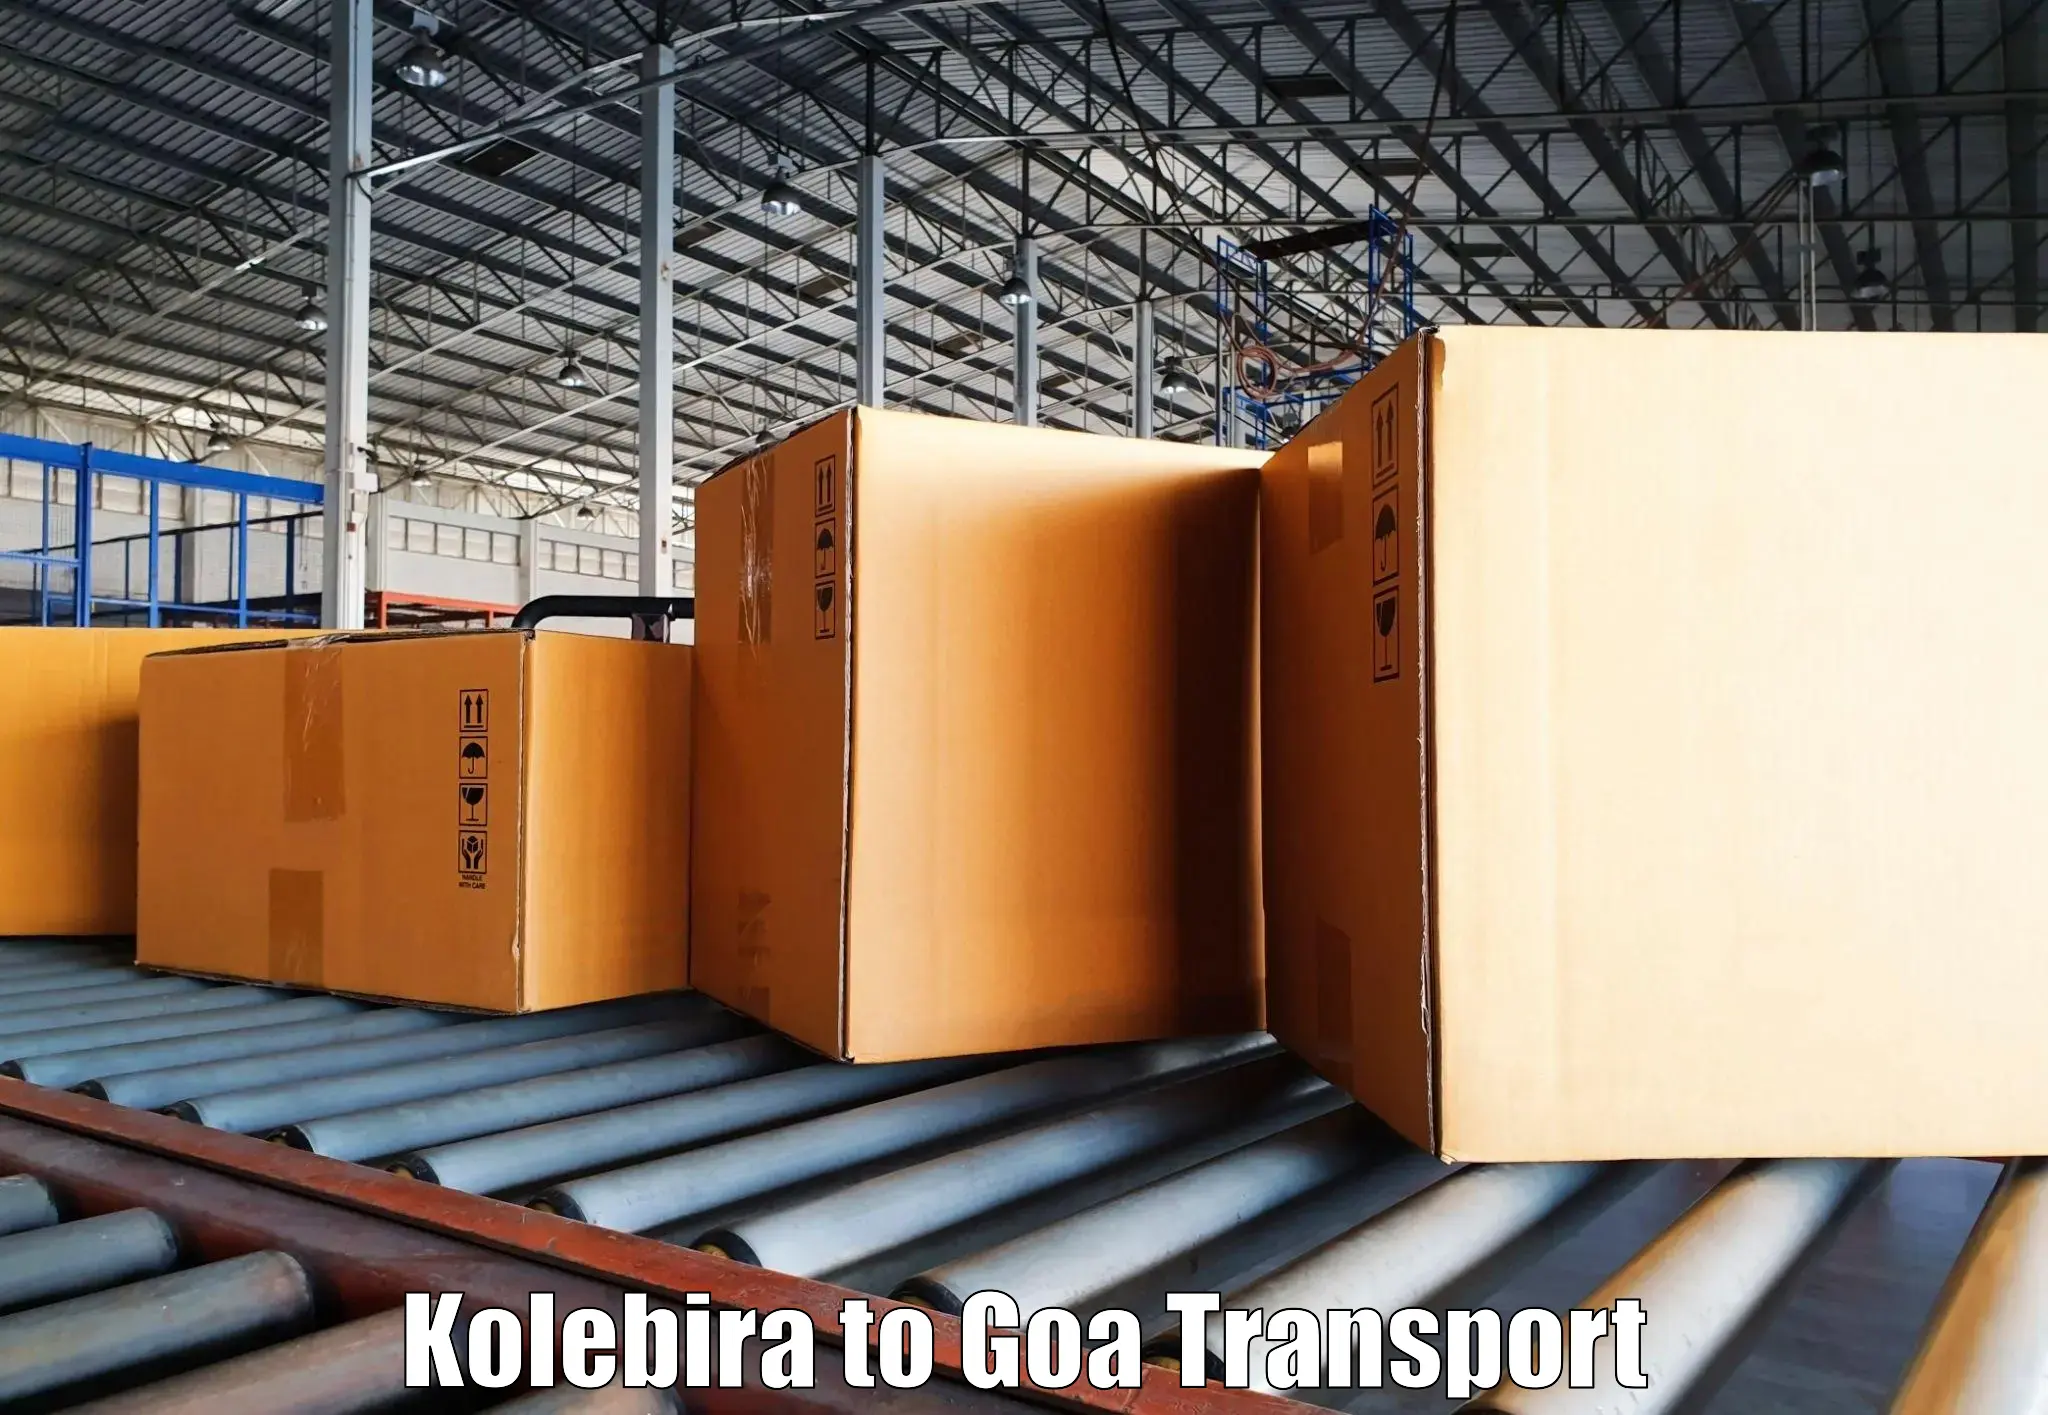 Nearest transport service Kolebira to Vasco da Gama